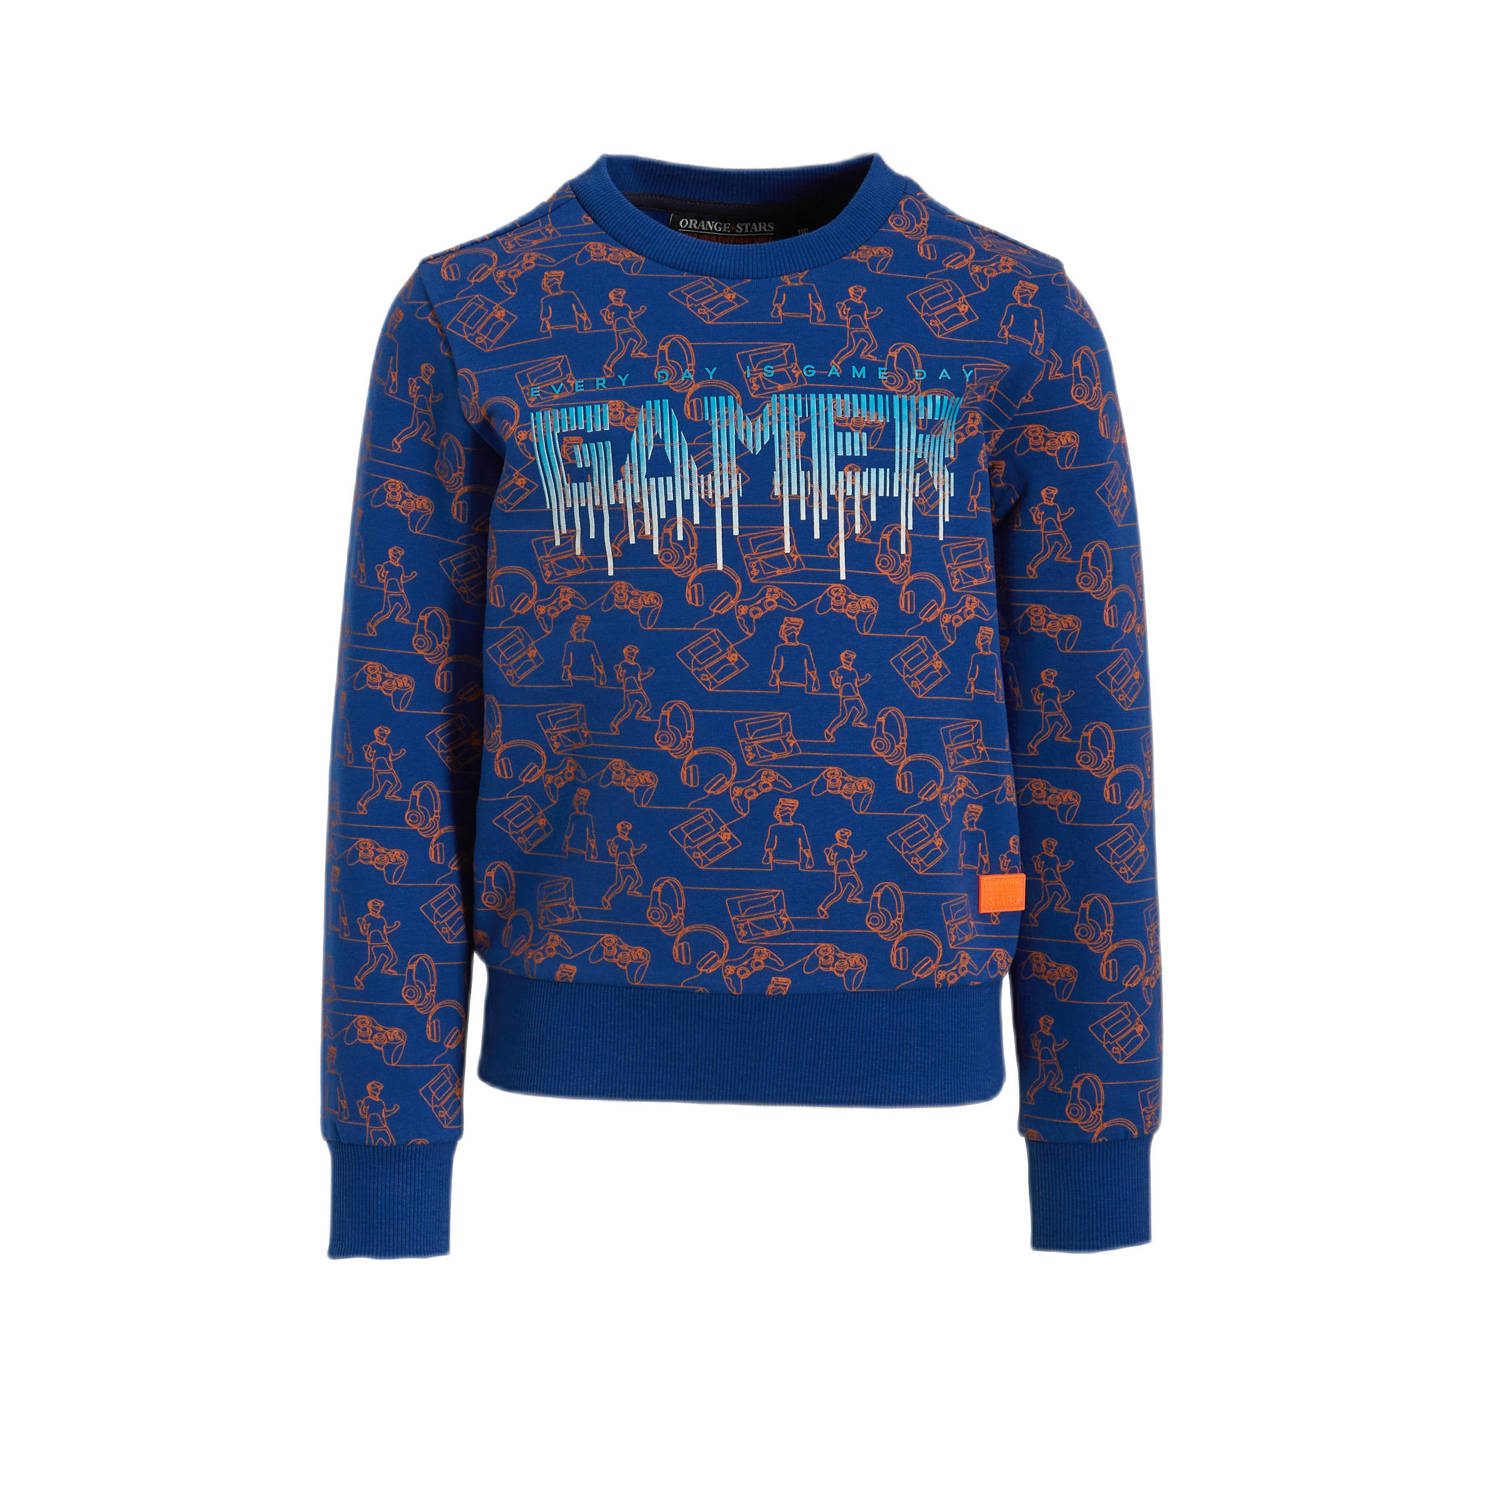 Orange Stars sweater Noud met all over print blauw Trui Jongens Katoen Ronde hals 104